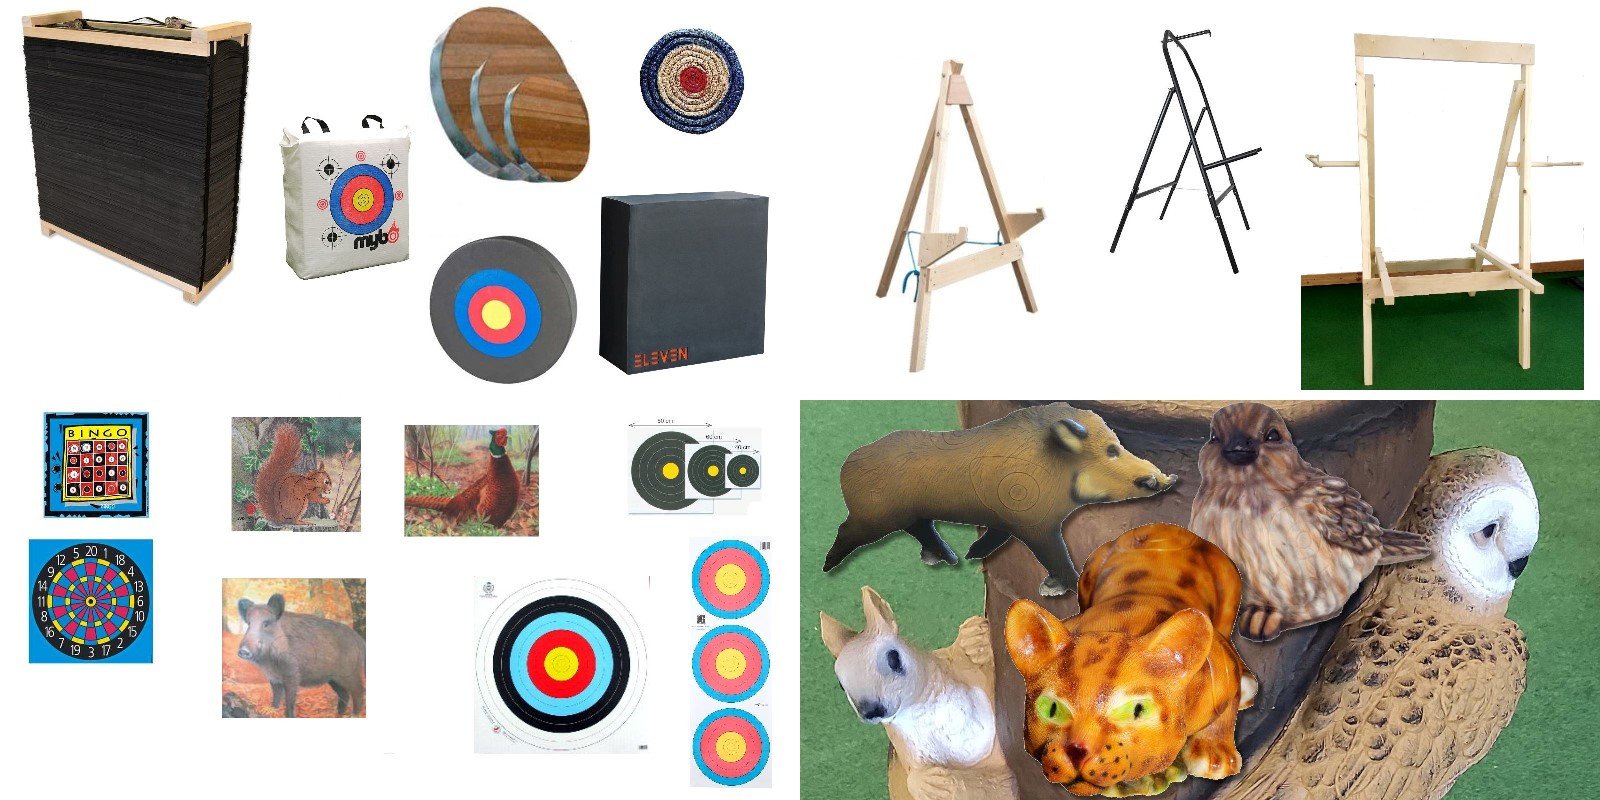 Zielscheiben, Ständer, Scheibenauflagen und viele 3D Targets